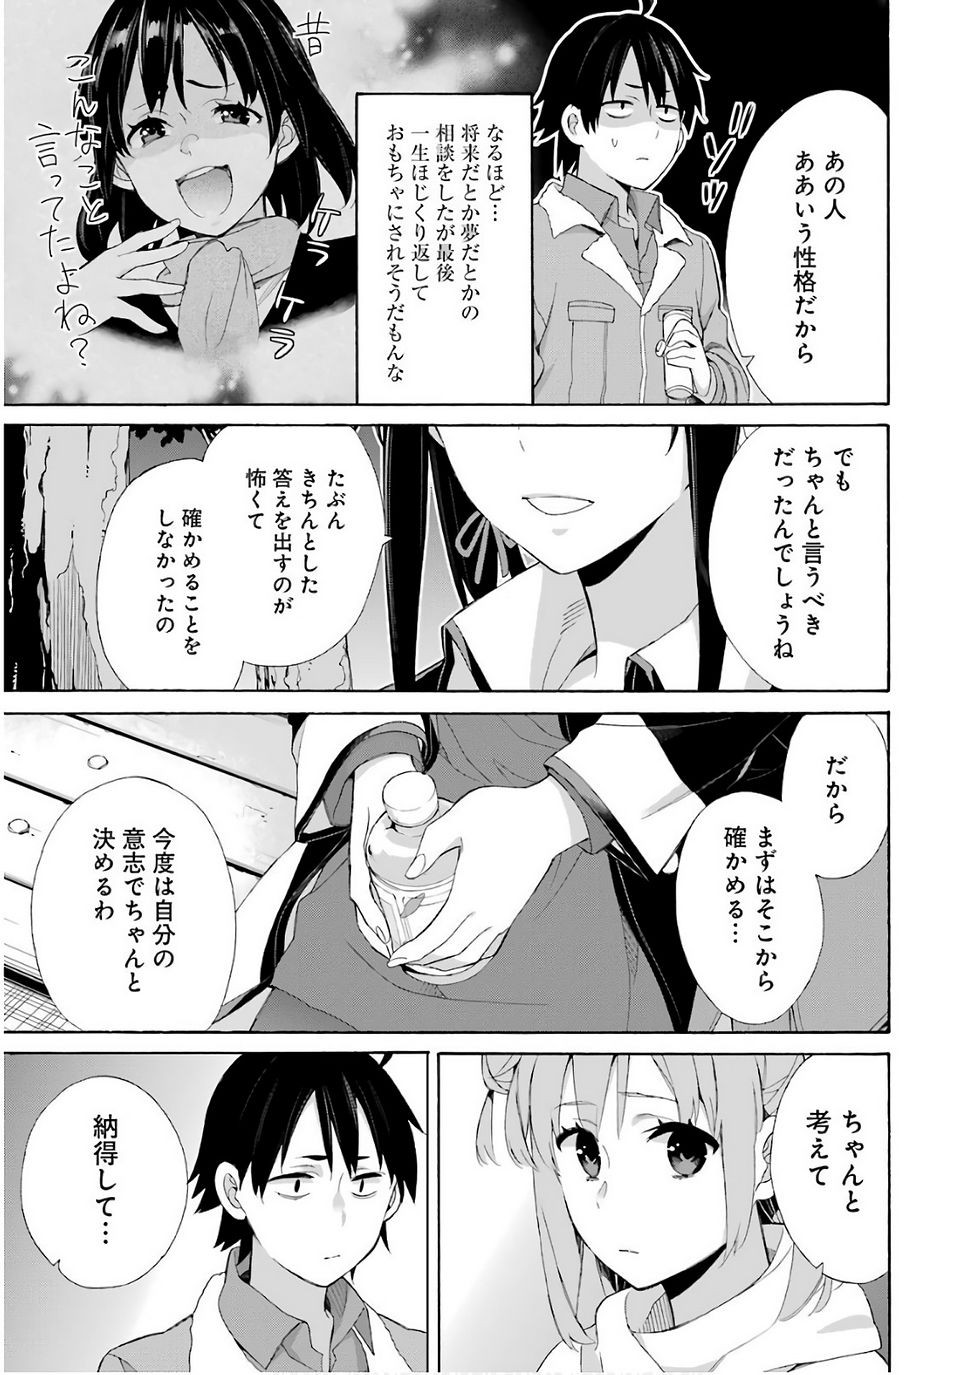 Yahari Ore no Seishun Rabukome wa Machigatte Iru. - Monologue - Chapter 60 - Page 34